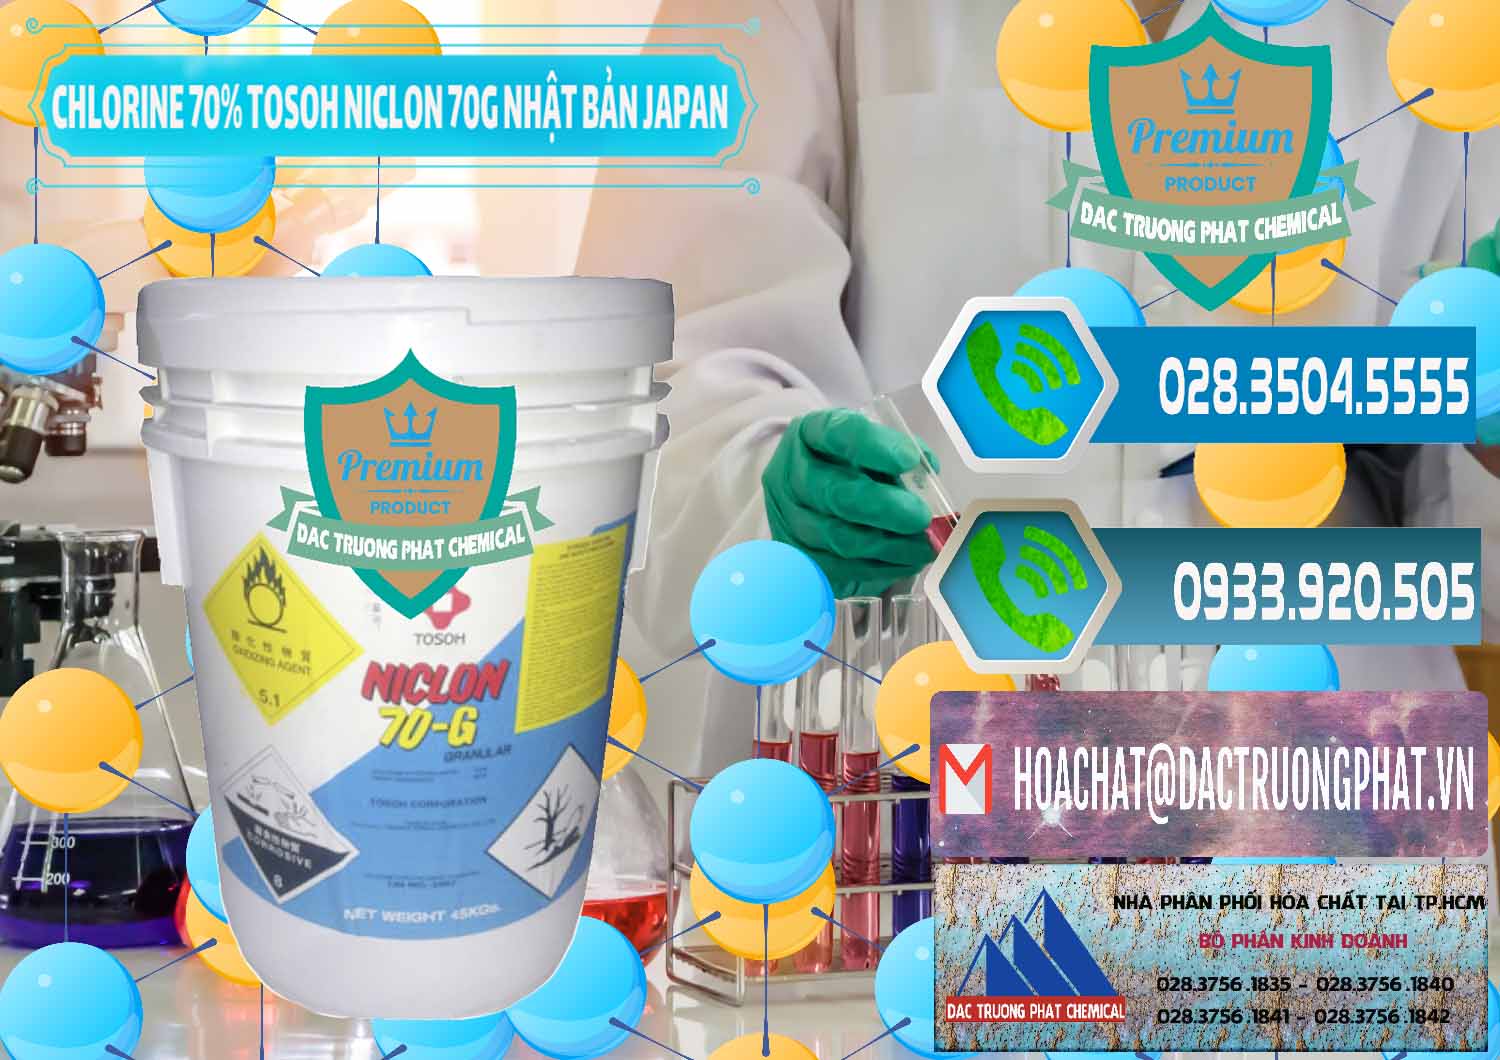 Cty chuyên bán ( phân phối ) Clorin – Chlorine 70% Tosoh Niclon 70G Nhật Bản Japan - 0242 - Công ty chuyên bán _ cung cấp hóa chất tại TP.HCM - congtyhoachat.net